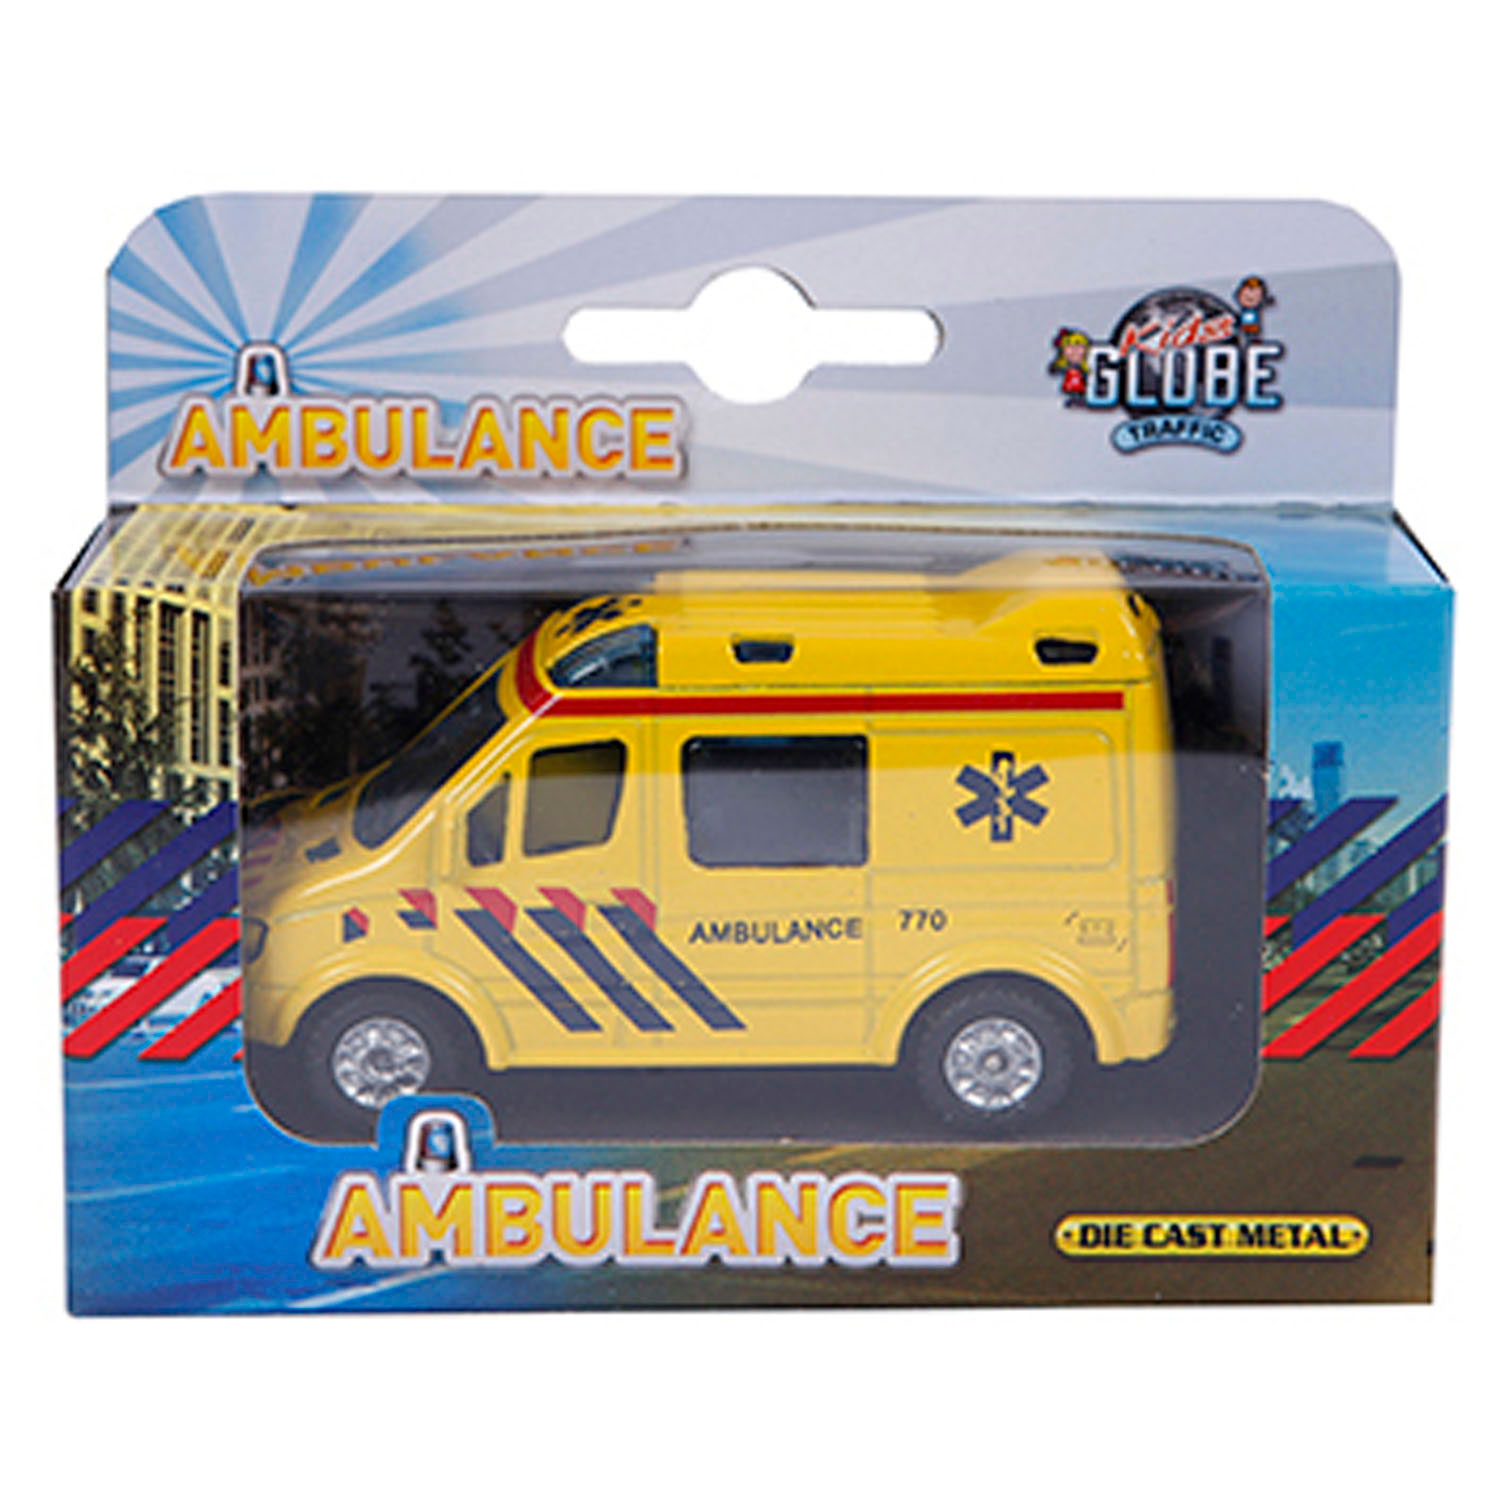 Kids Globe Druckguss-Krankenwagen NL, 8 cm